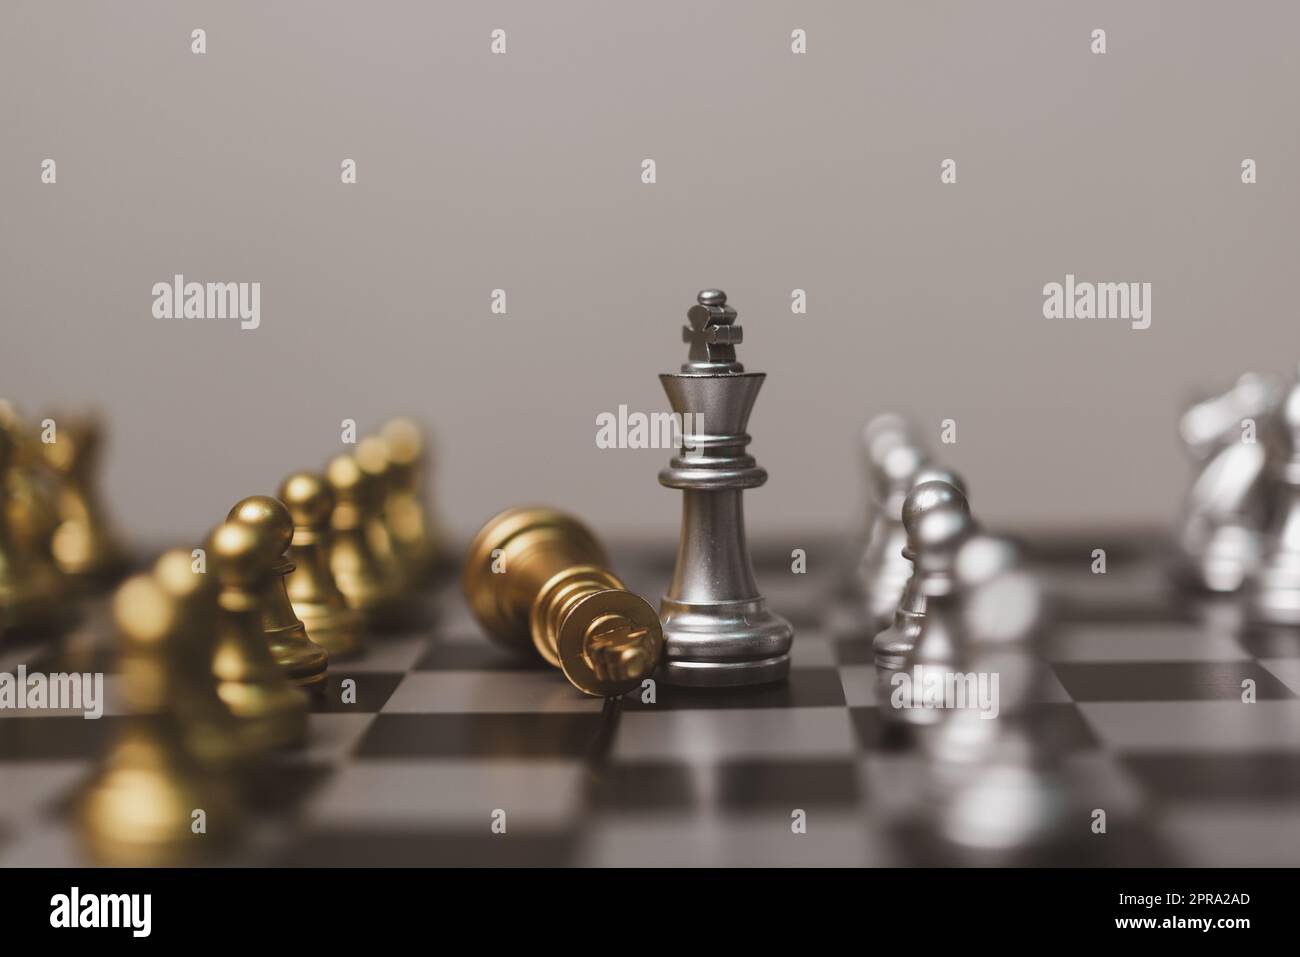 jeu d'échecs stand sur chessboard.Business stratégie travail d'équipe succès concept d'investissement. Banque D'Images